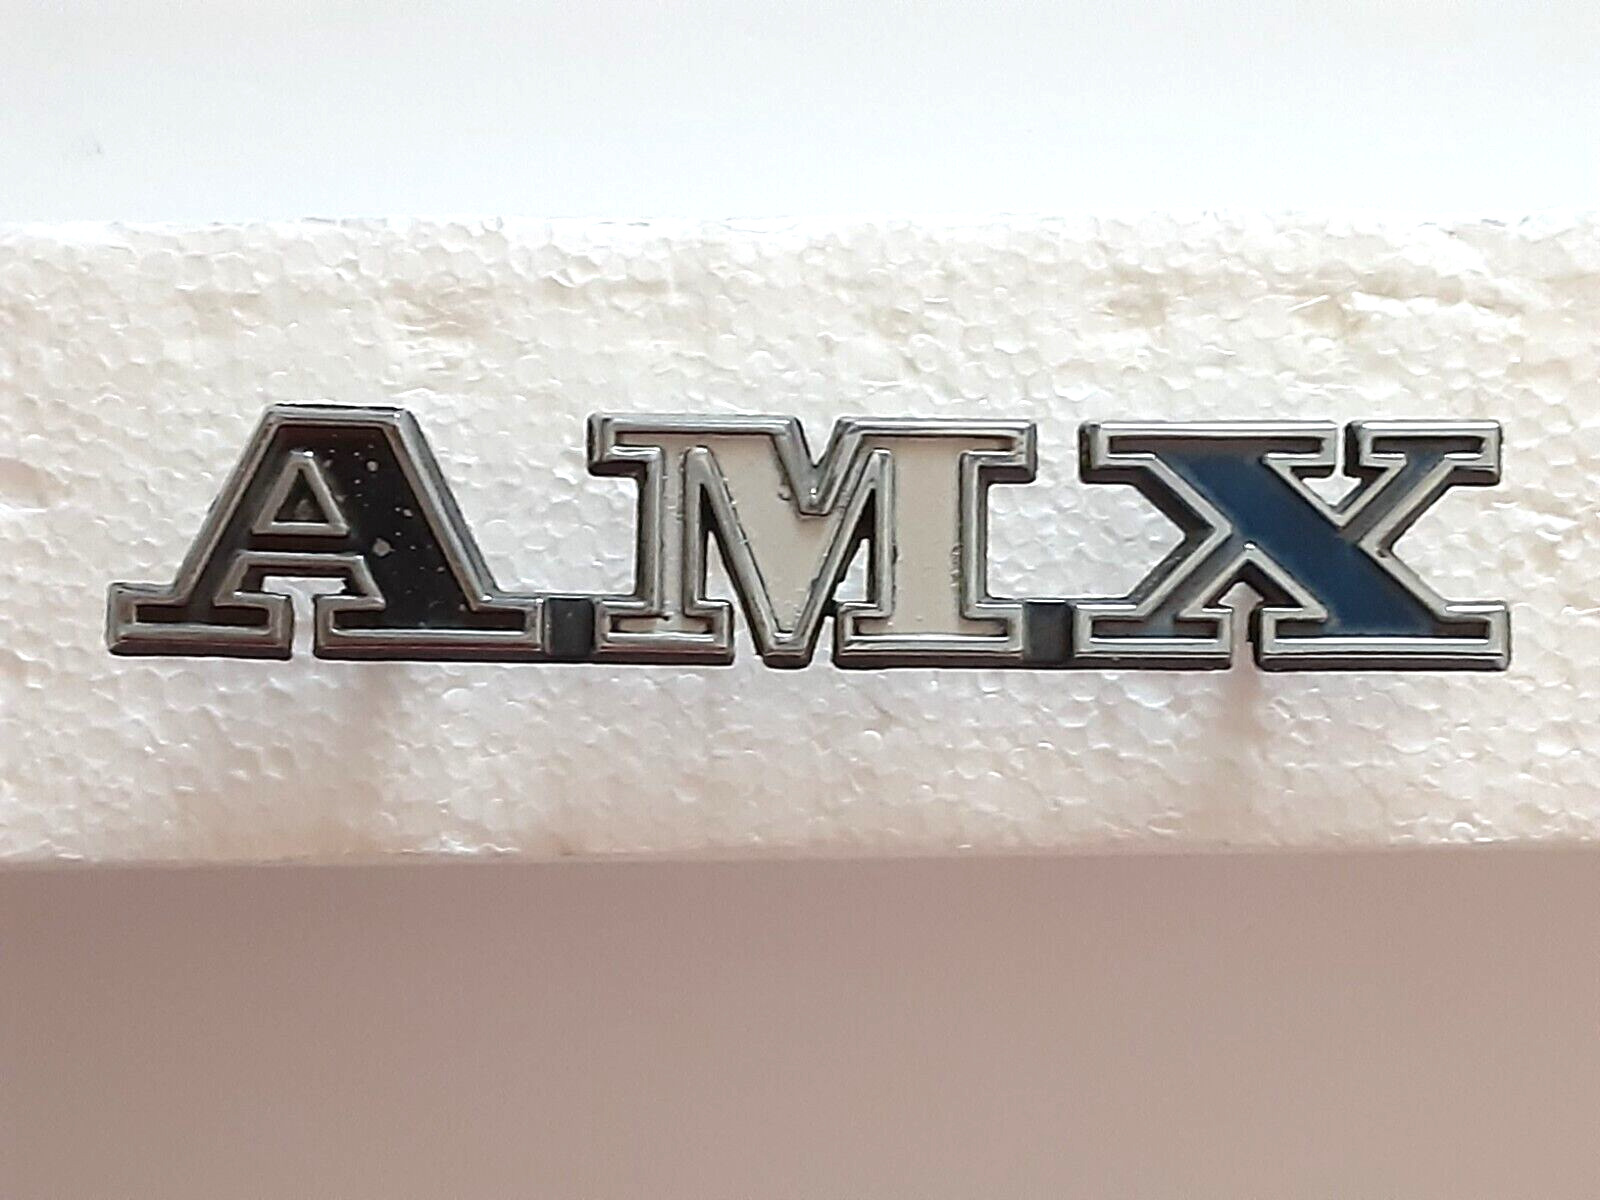 AMC AMX Javelin Vintage 1971-1974 #3633536 exterior Tag Emblem